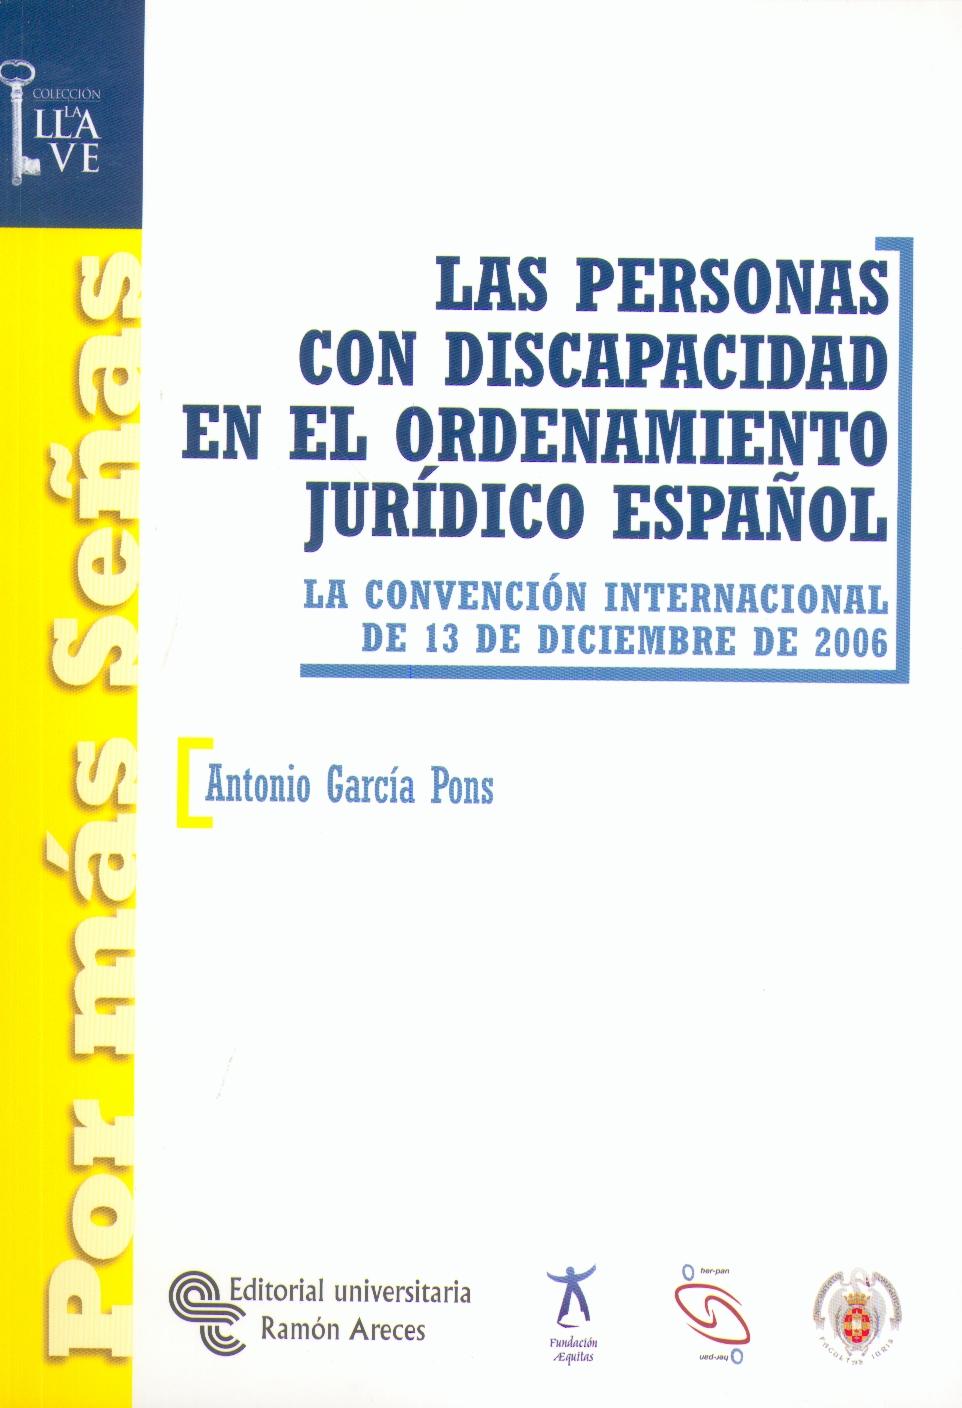 Las Personas con Discapacidad en el Ordenamiento Jurídico Español.